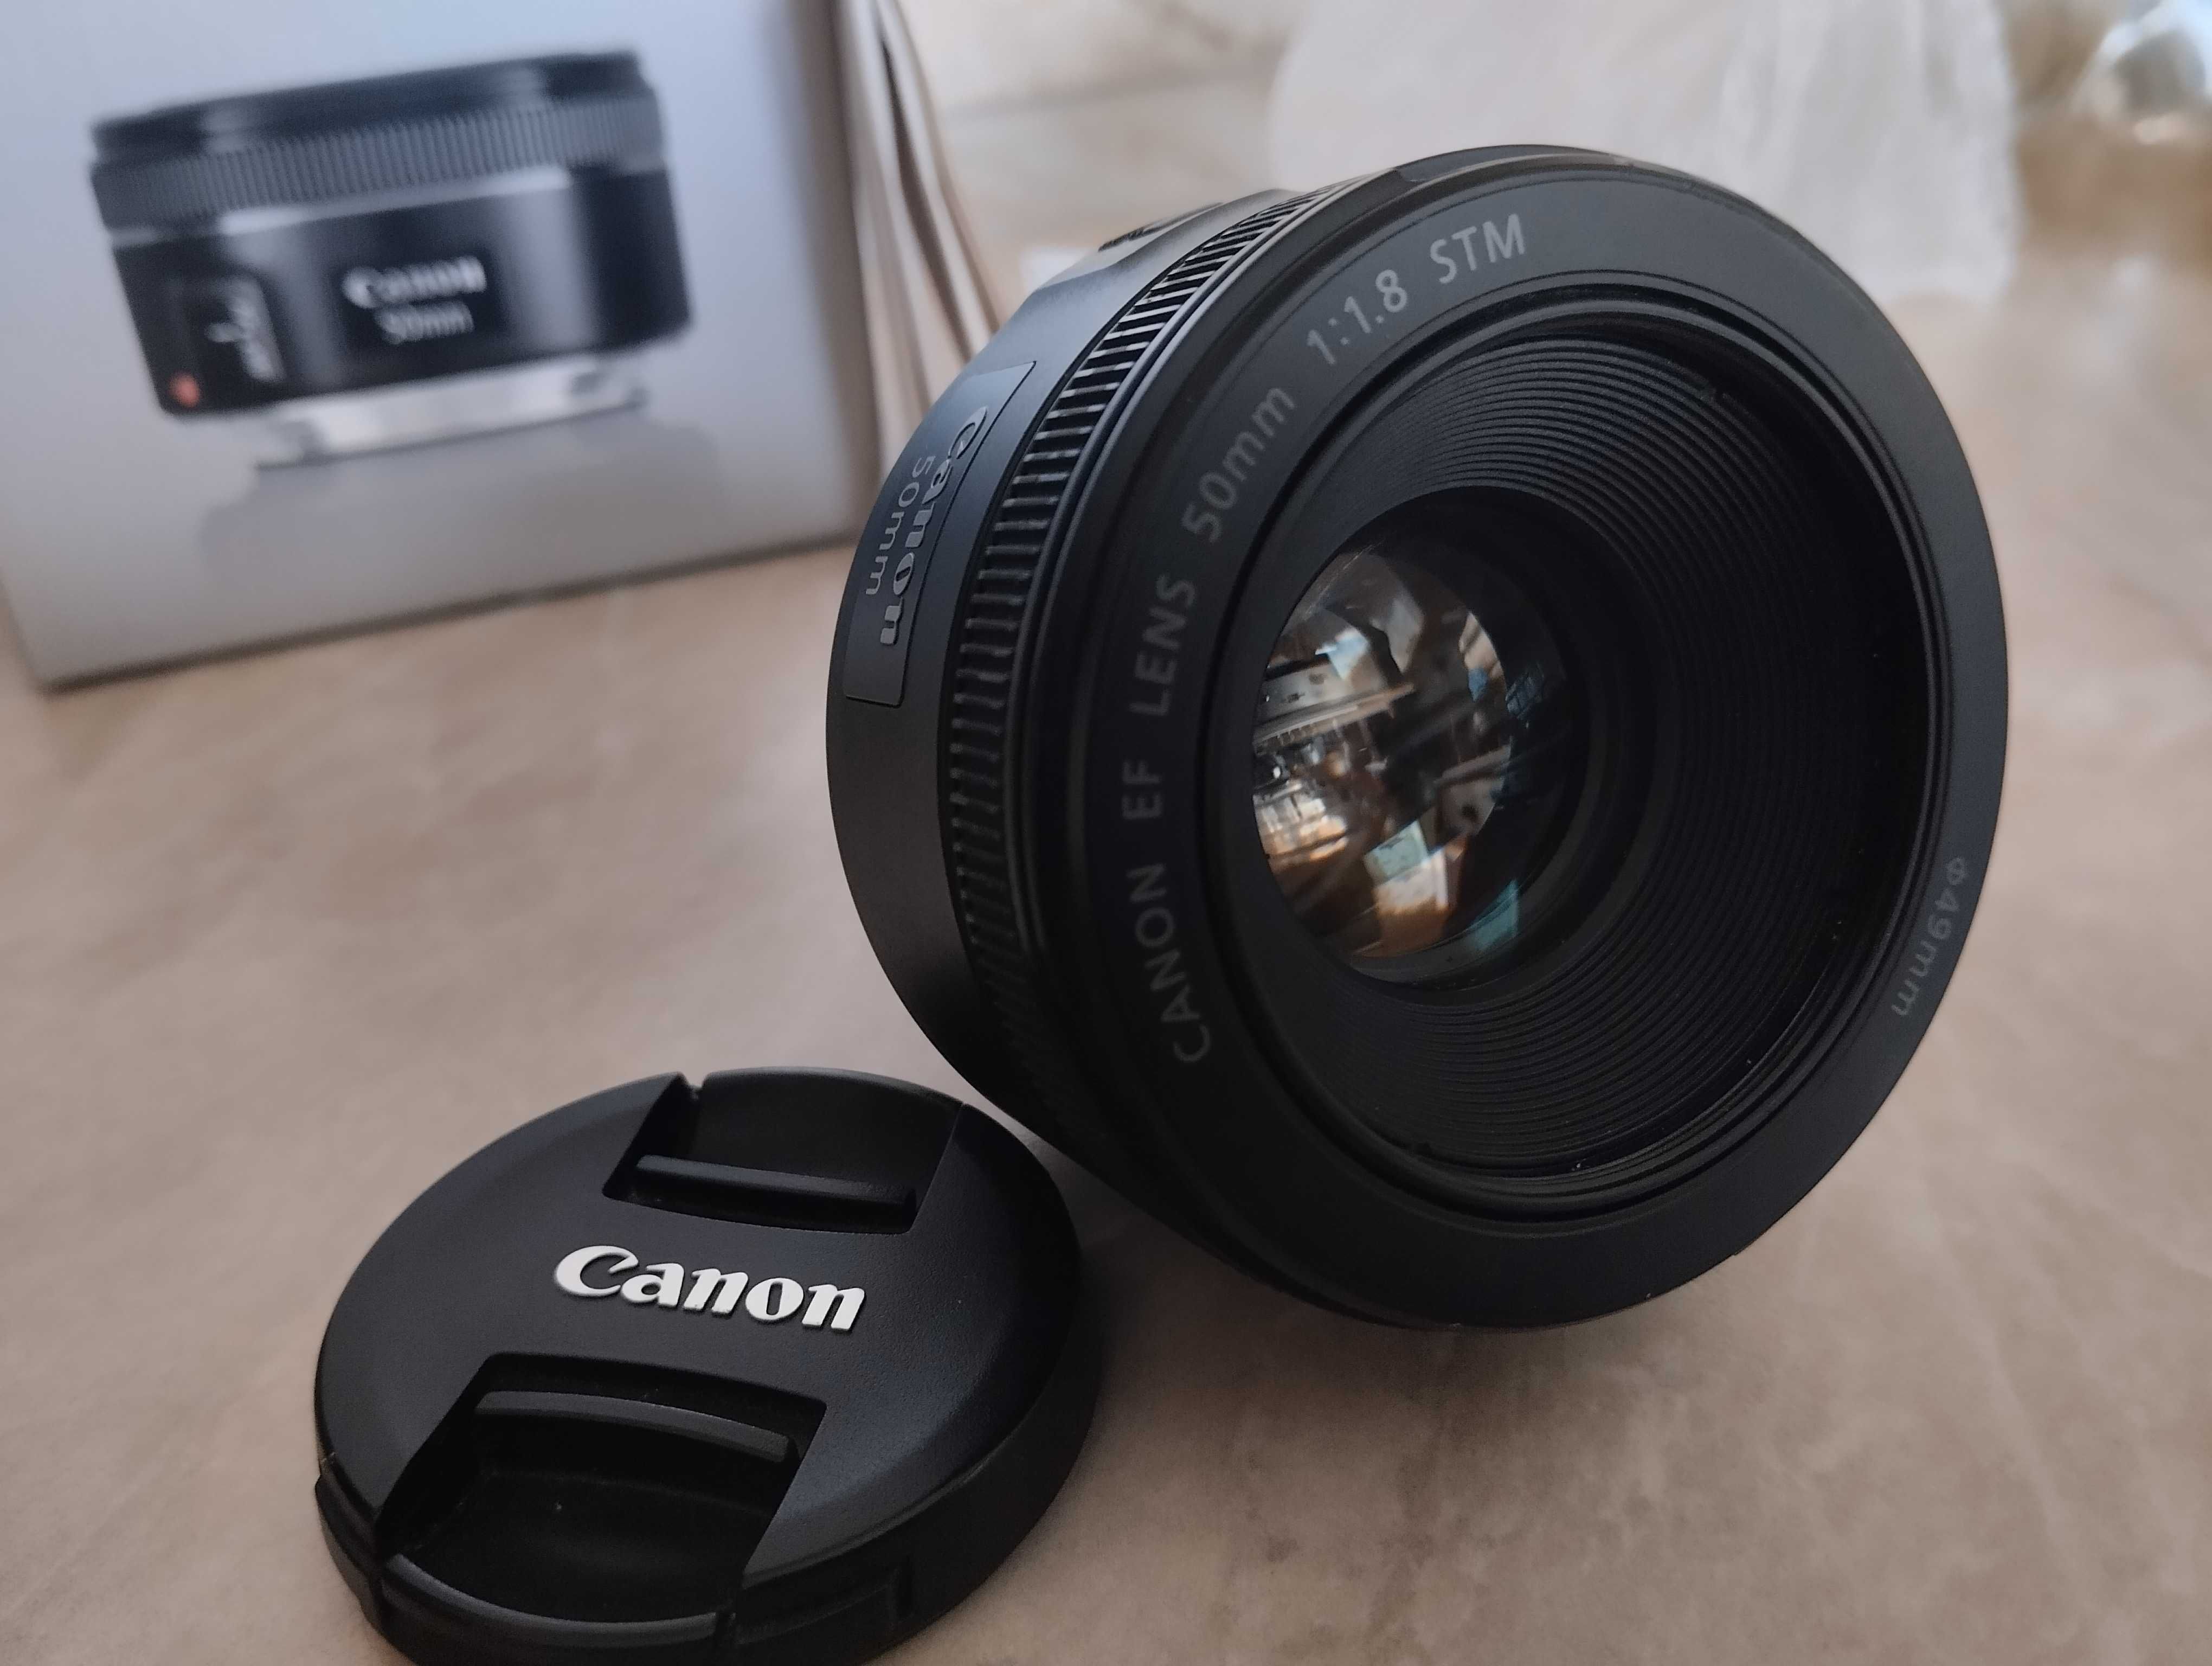 Canon EF 50mm f/1.8 STM. Є коробка. Новий